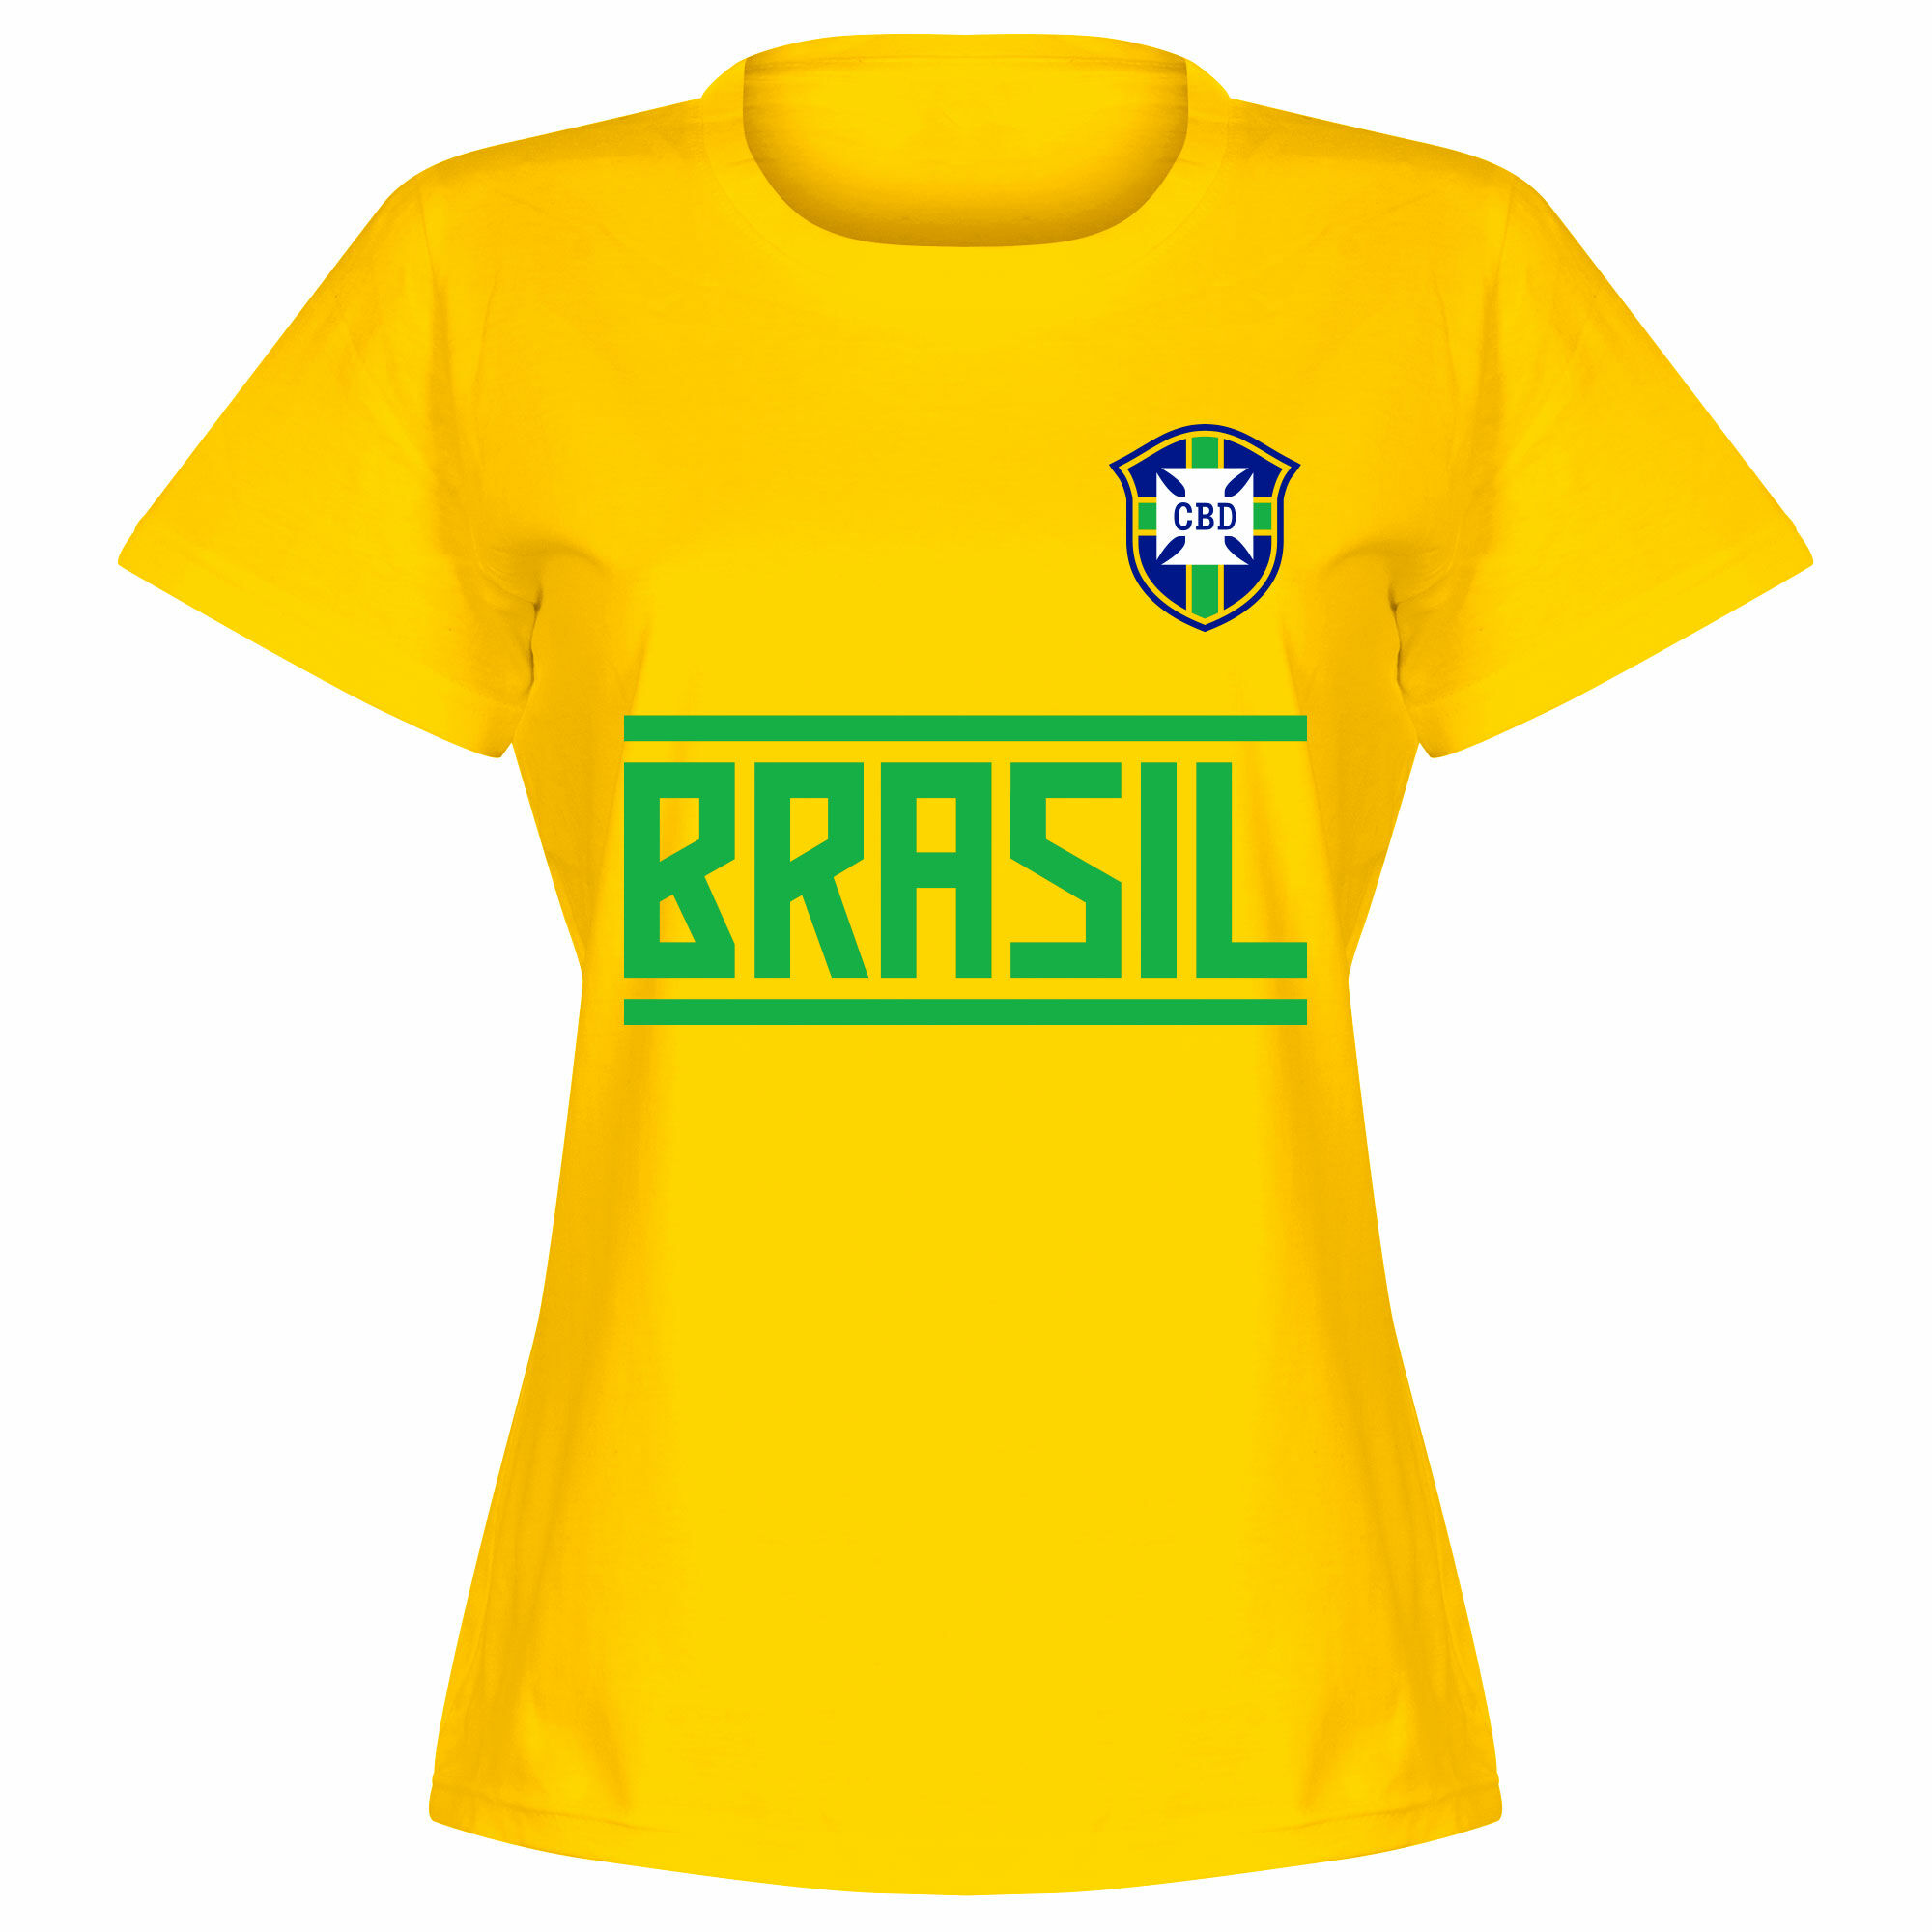 Brazílie - Tričko dámské - žluté